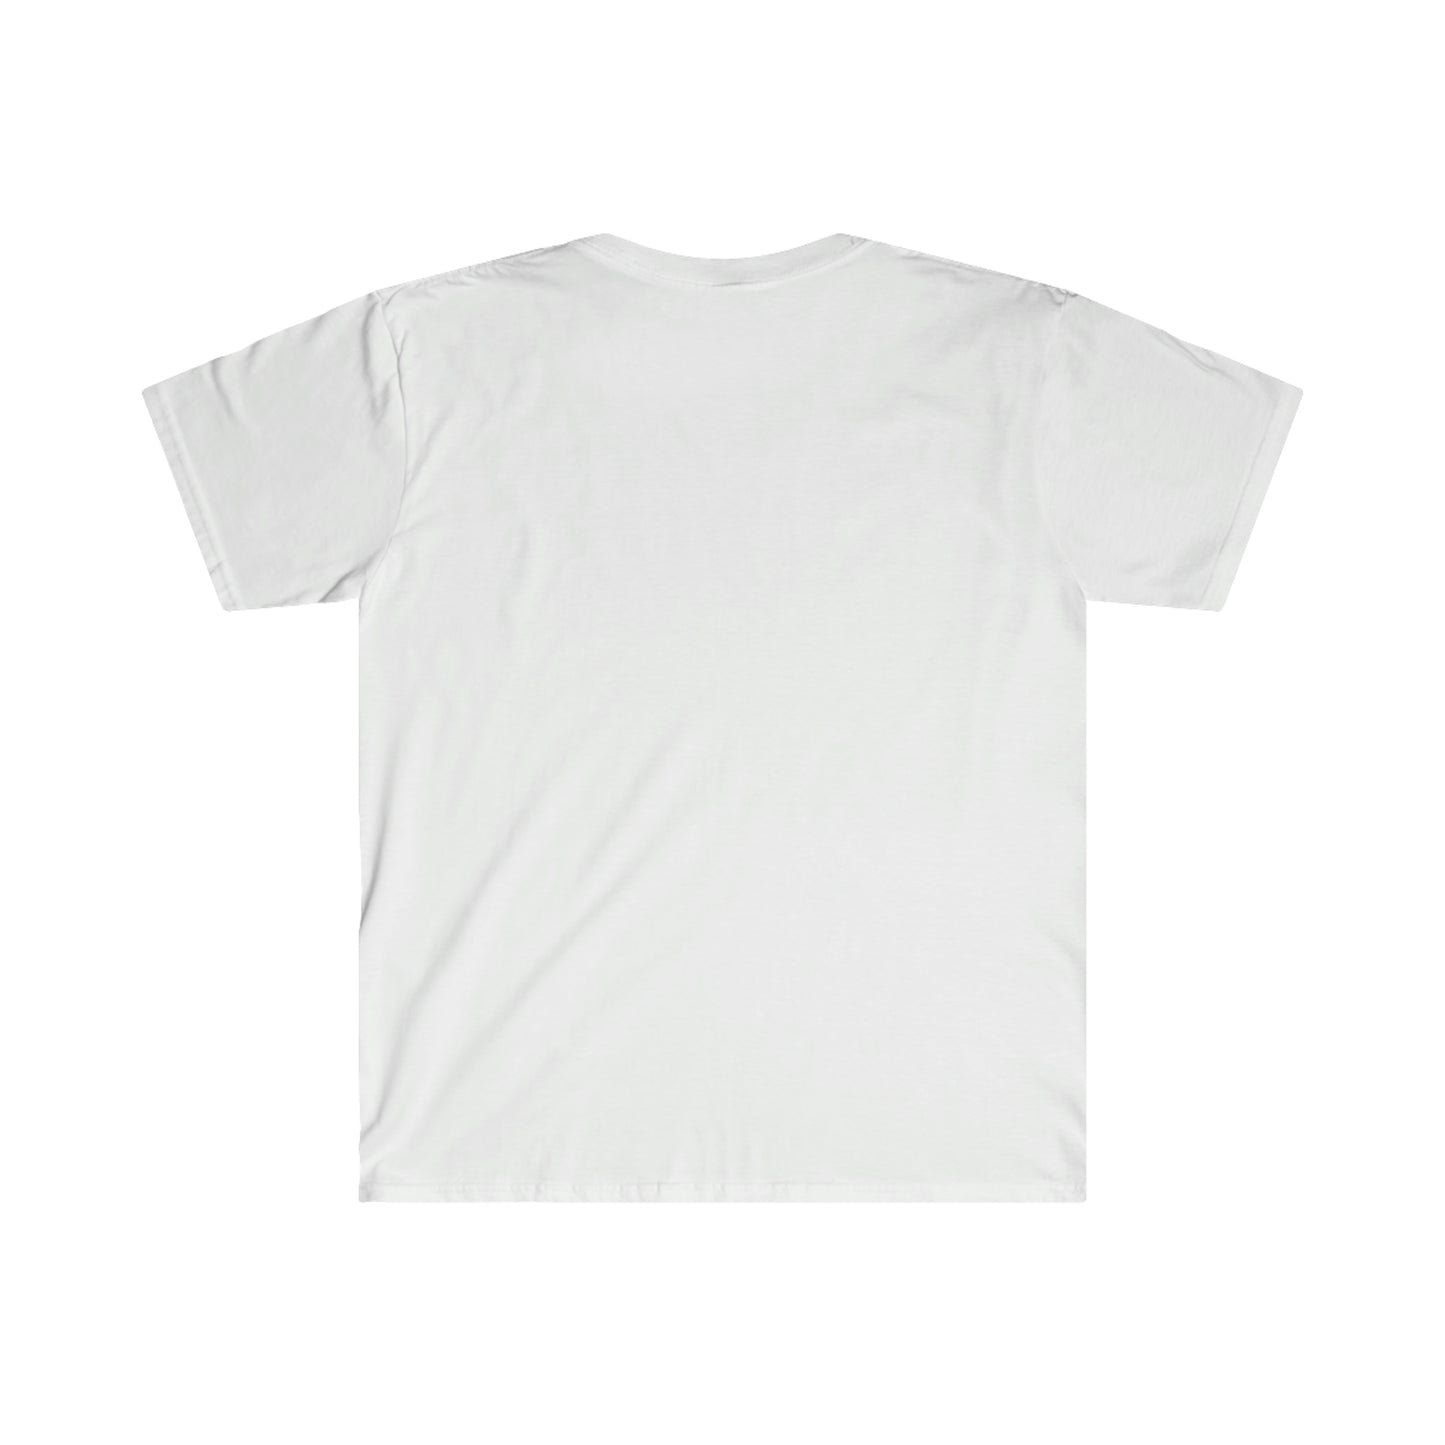 NEW seanthesheepman Adult Unisex Softstyle T-Shirt - Pocket White